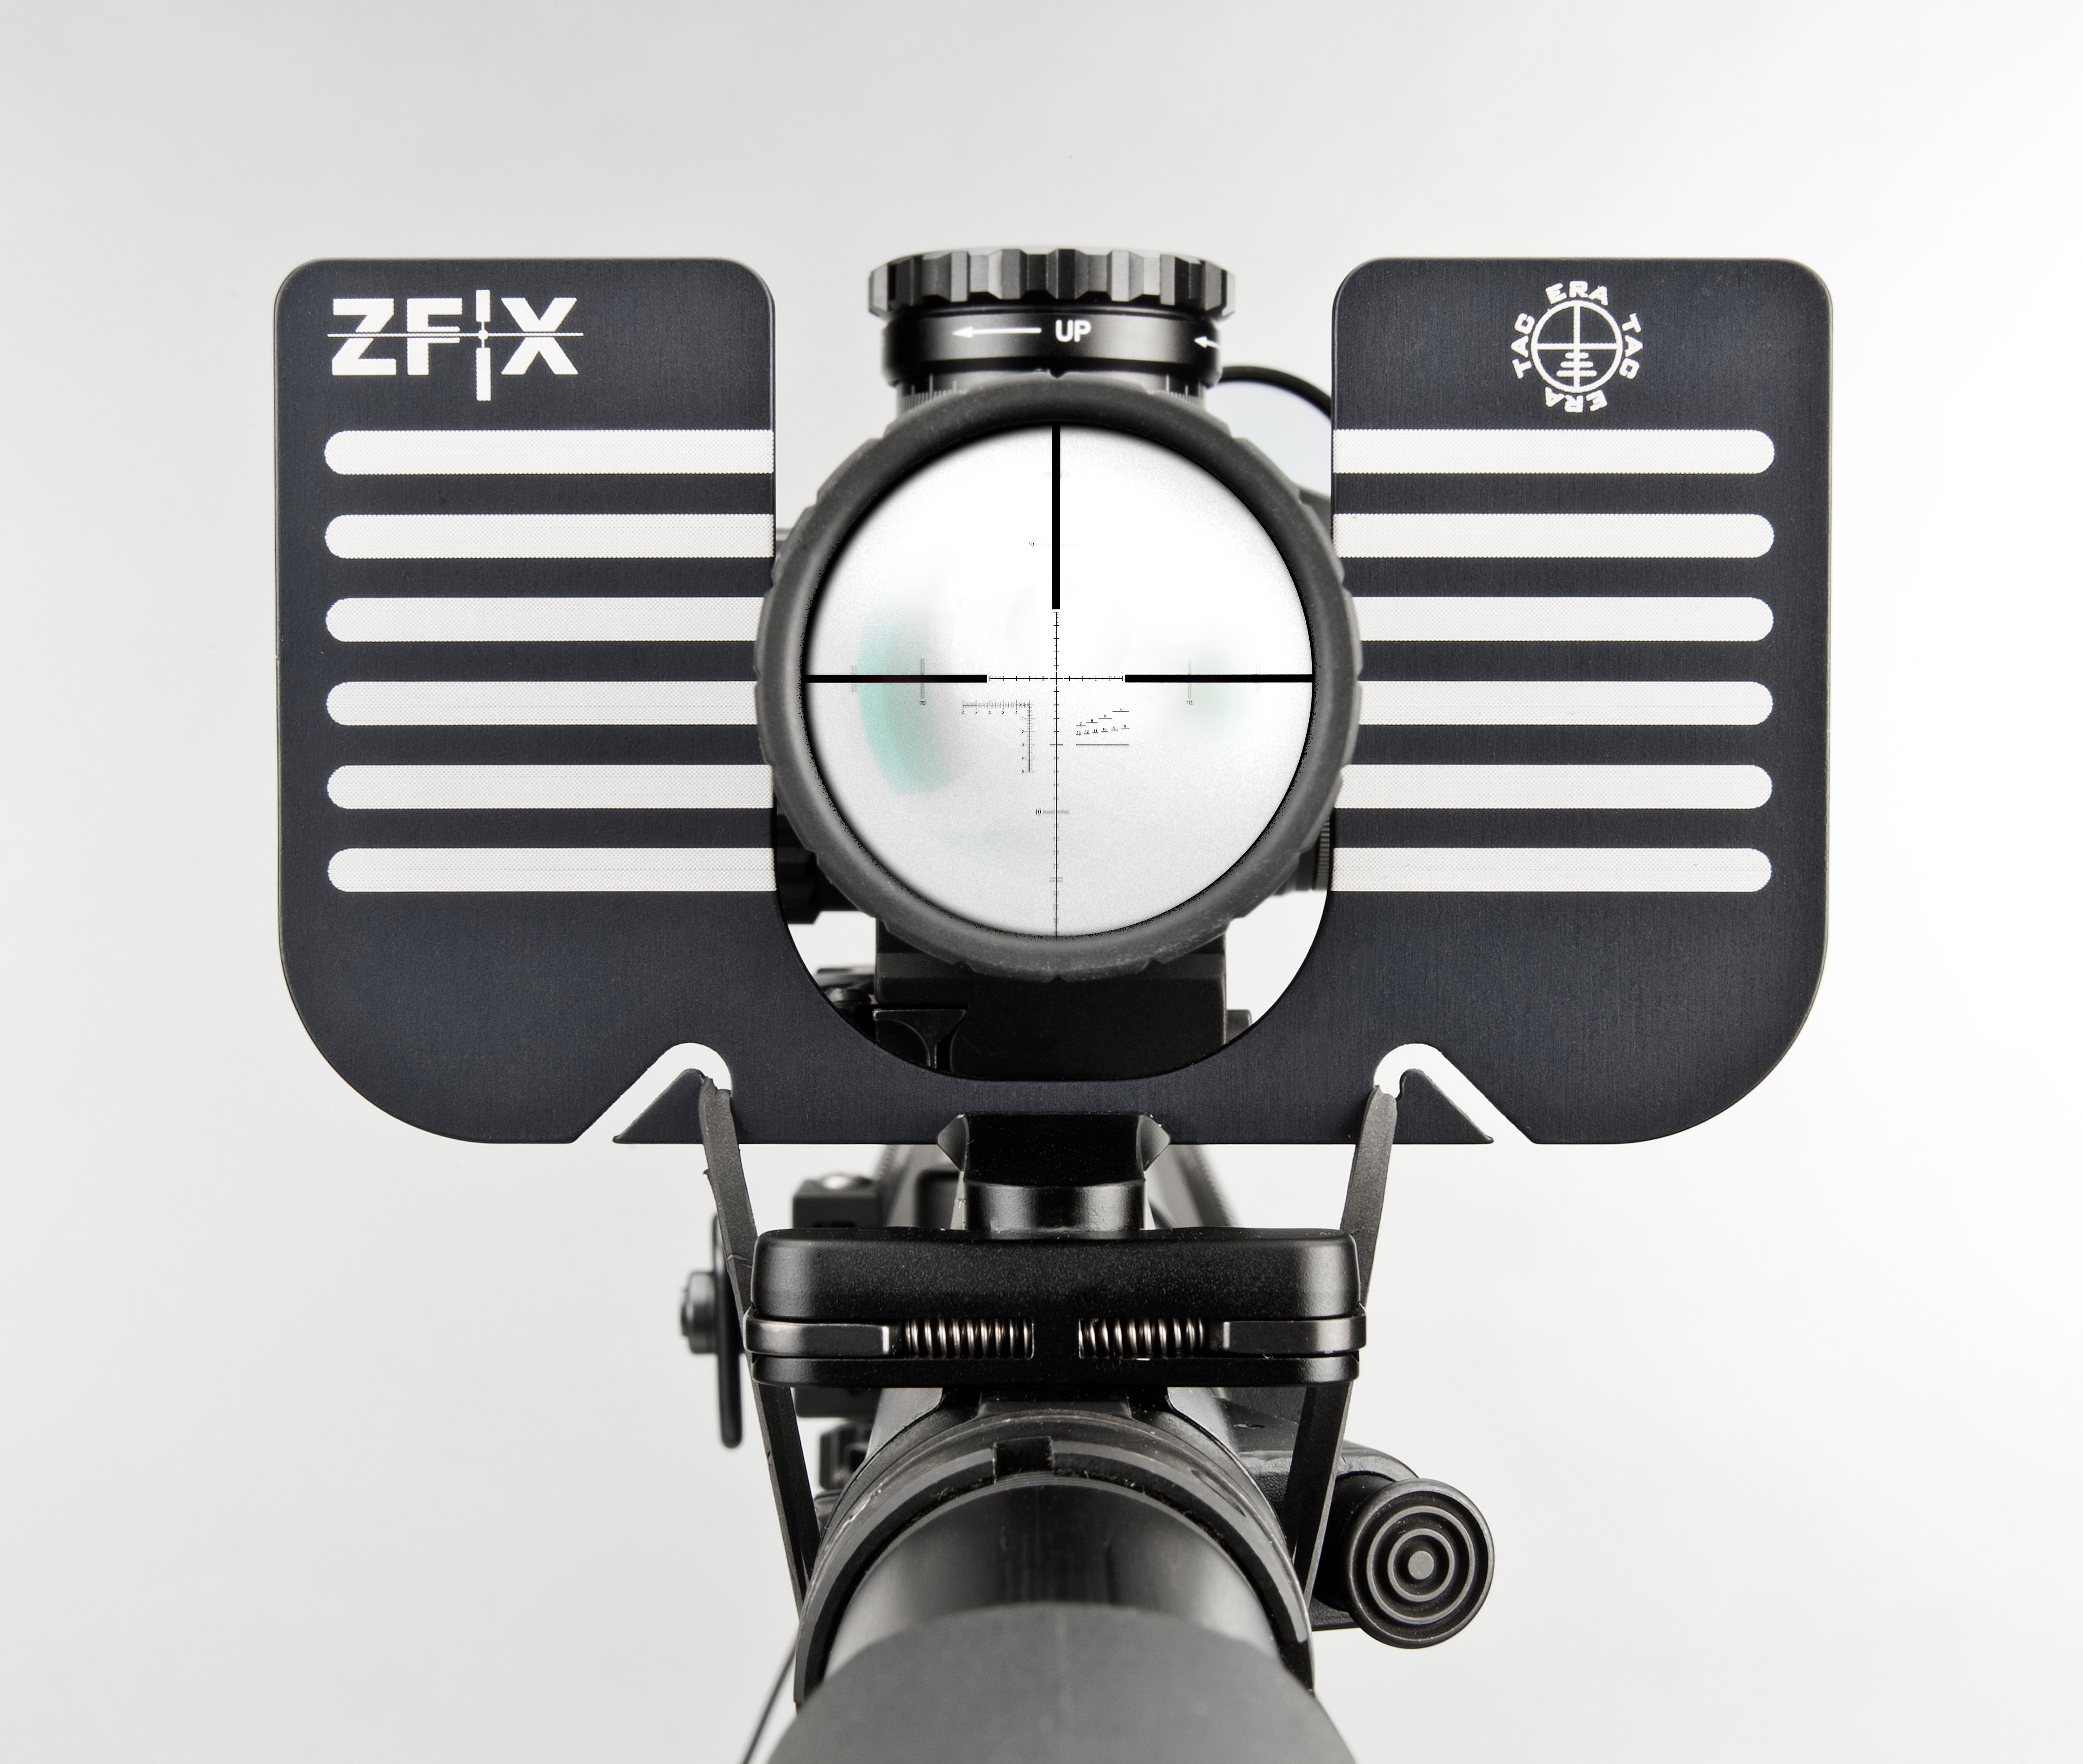 Recknagel "ZFIX" Reticle Alignment Tool - ET-ZFIX